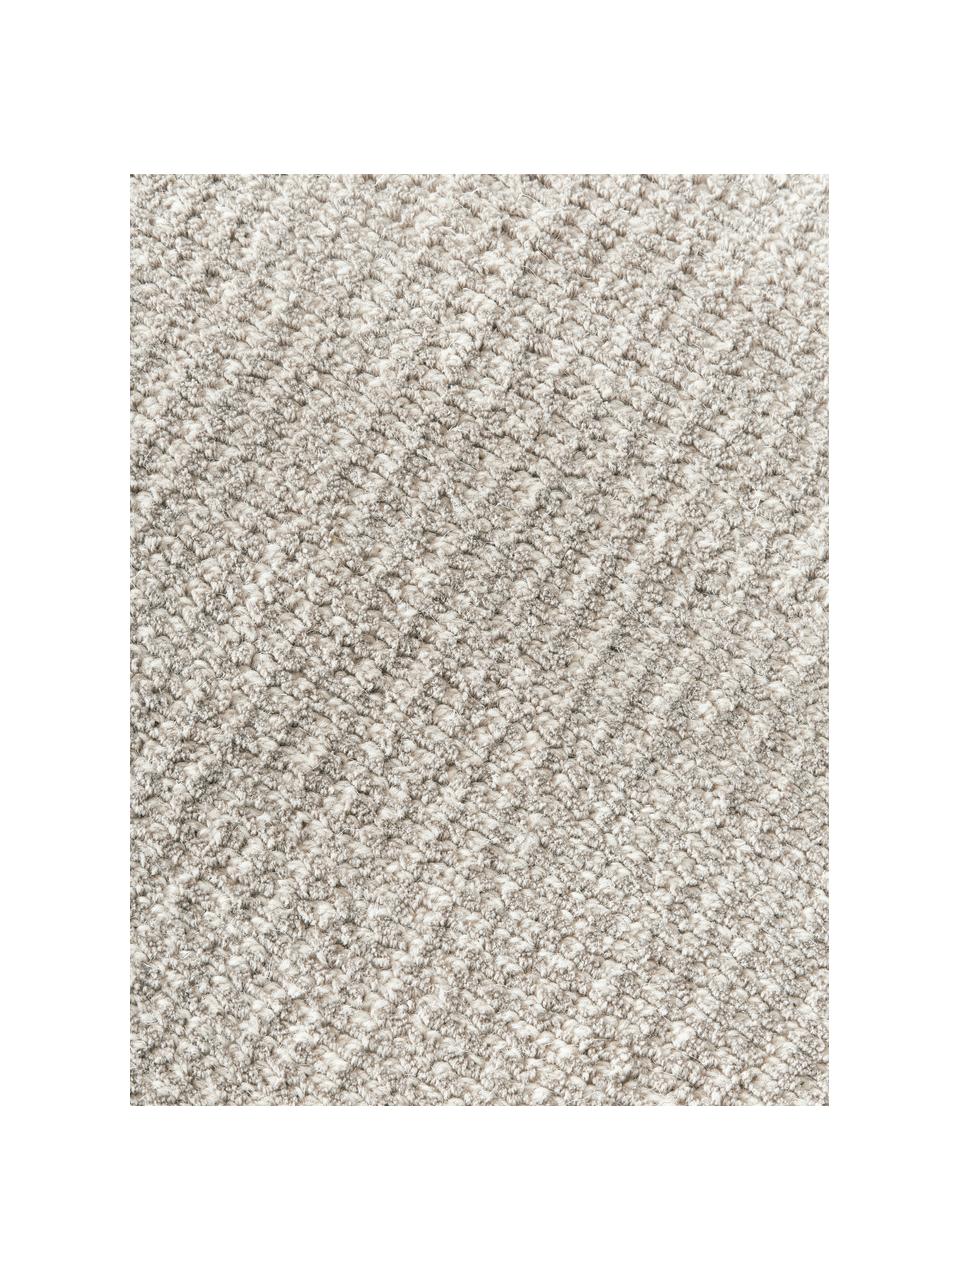 Tapis à poils courts gris clair tissé main Ainsley, 60 % polyester, certifié GRS
40 % laine, Gris clair, larg. 80 x long. 150 cm (taille XS)